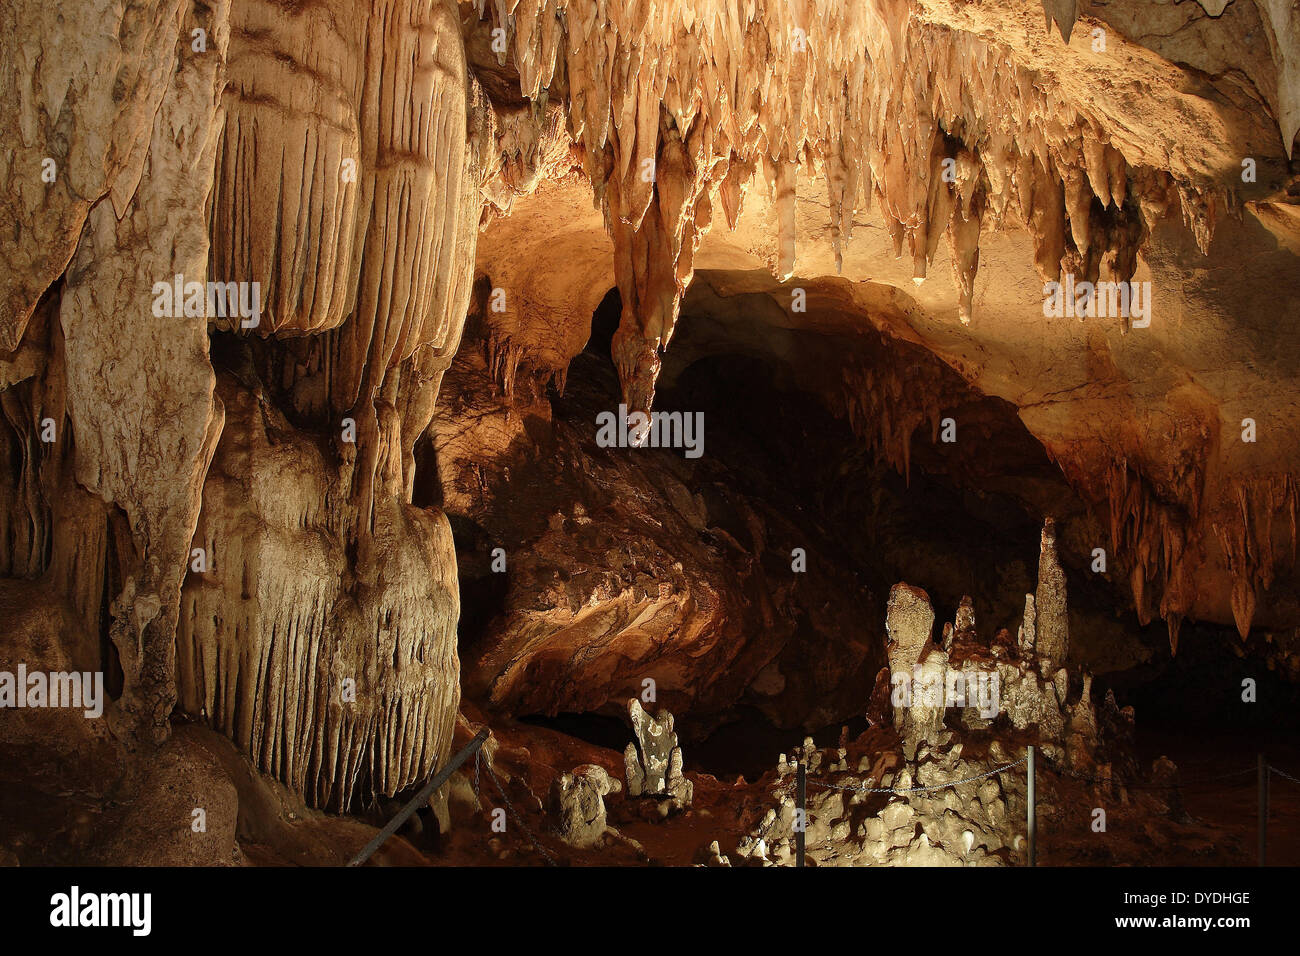 Asie grotte grotte de lave calcaire Kwai Kanchanaburi nature lieu d'intérêts stalactites stalactites grotte de calcaire de la Thaïlande Banque D'Images